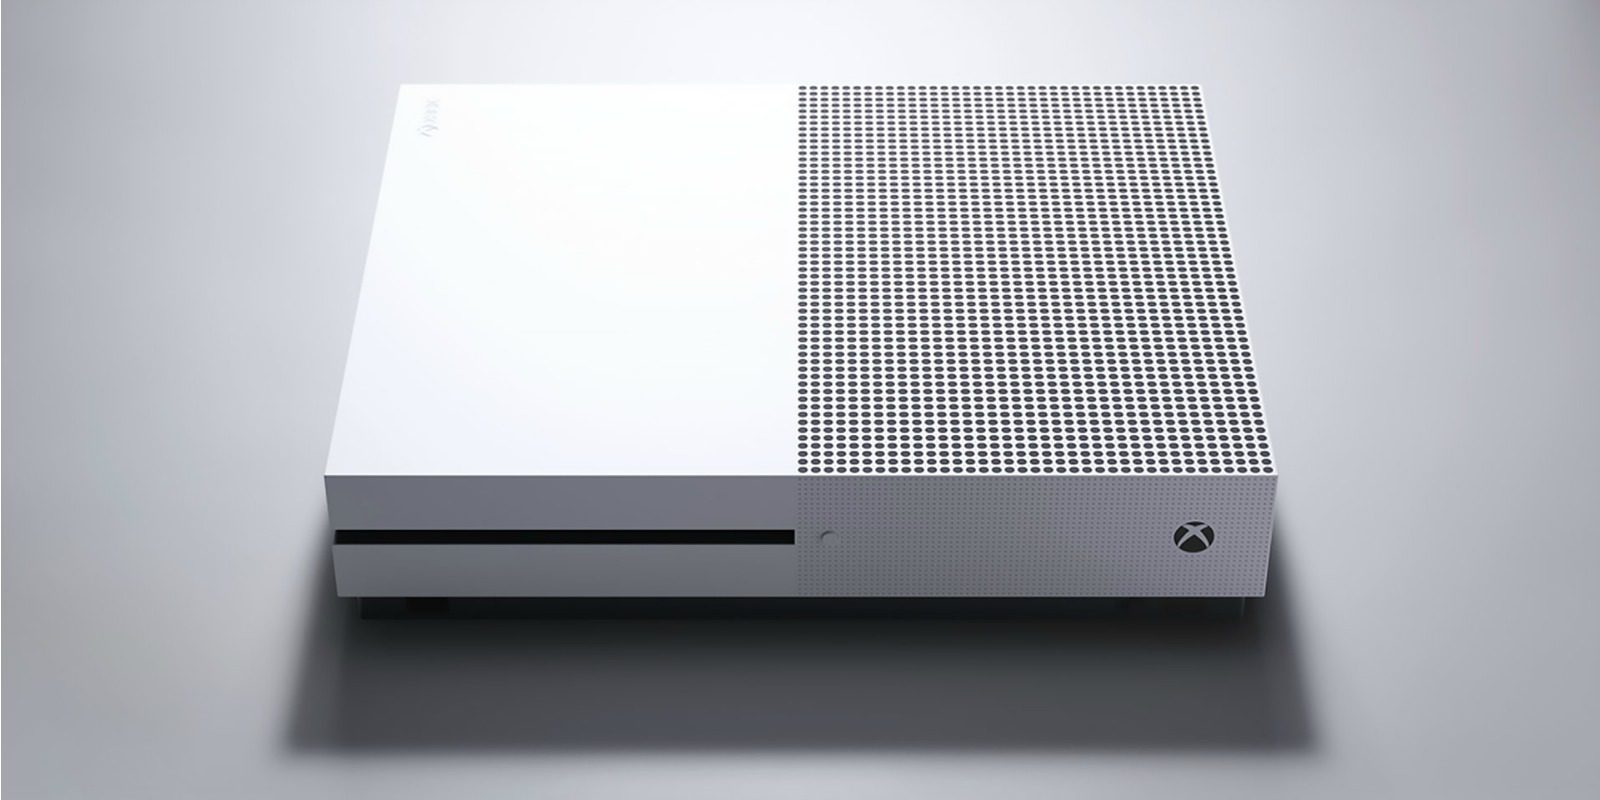 La nueva interfaz de Xbox One ya está en manos de los testers